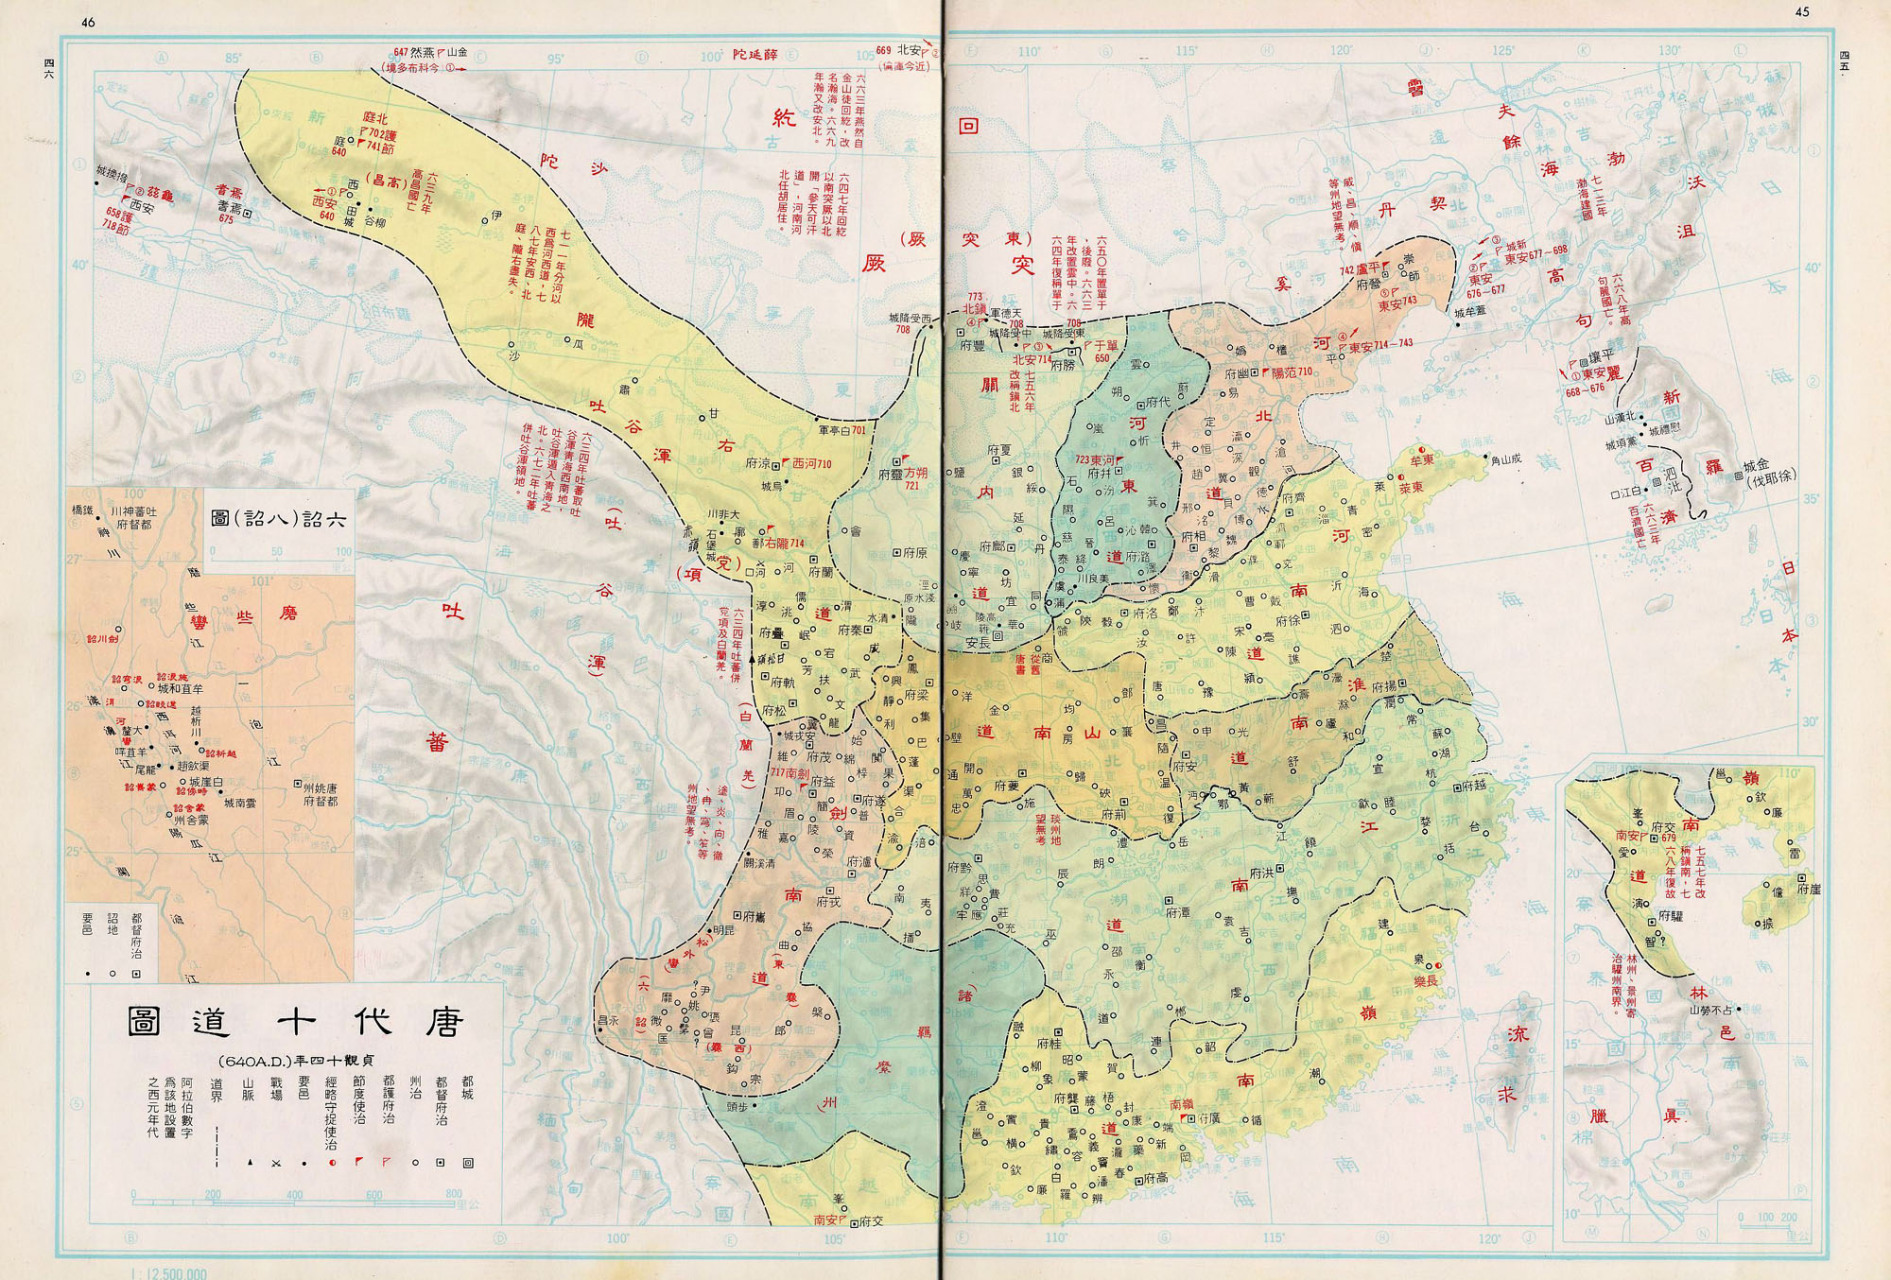 唐朝李世民时候的地图图片